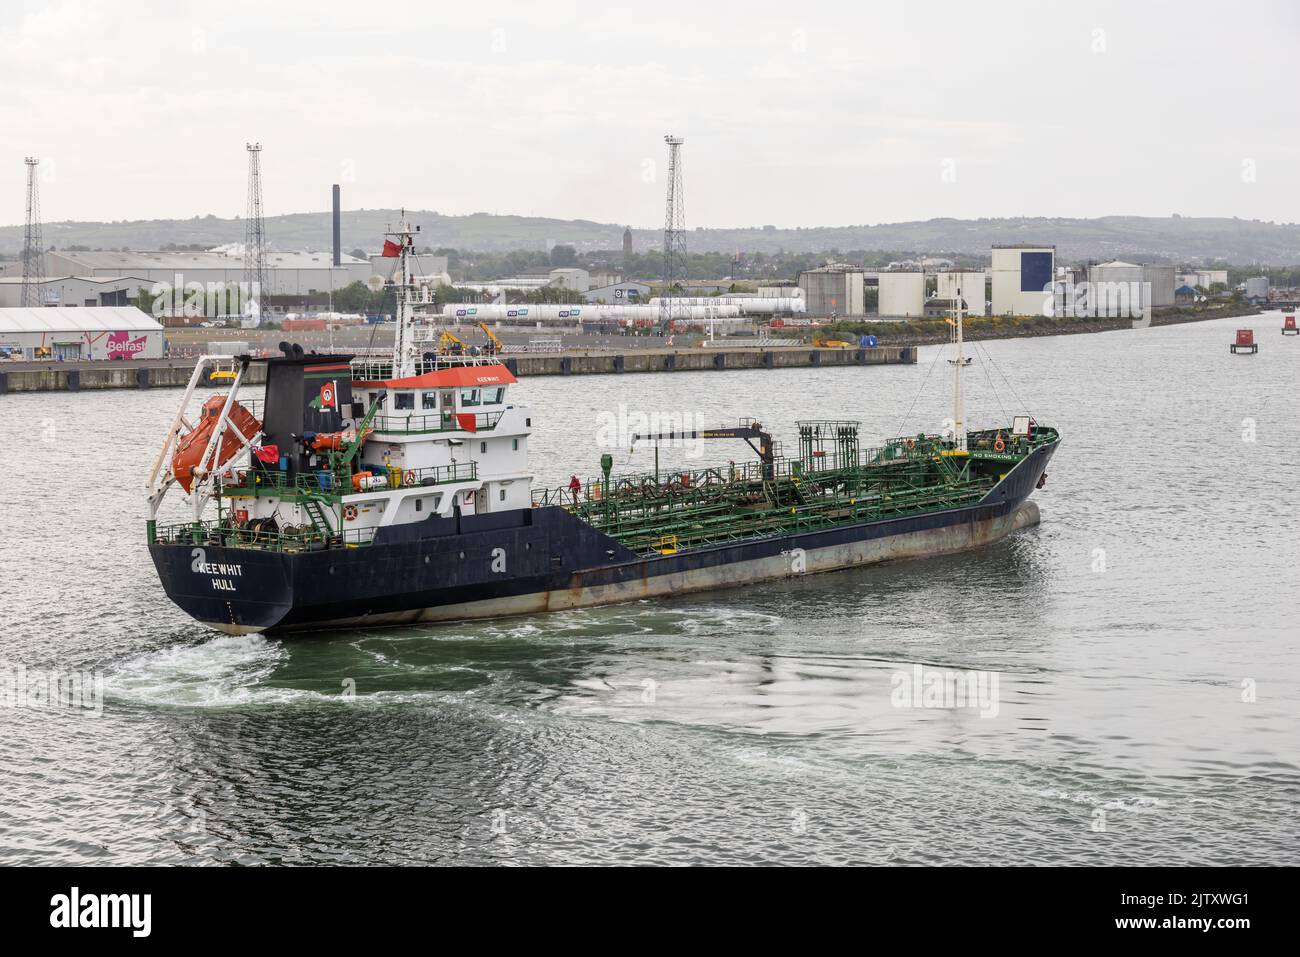 Keewhit - Oil Products Tanker - IMO: 9286504 - En Belfast Harbour, Irlanda del Norte, Reino Unido Foto de stock